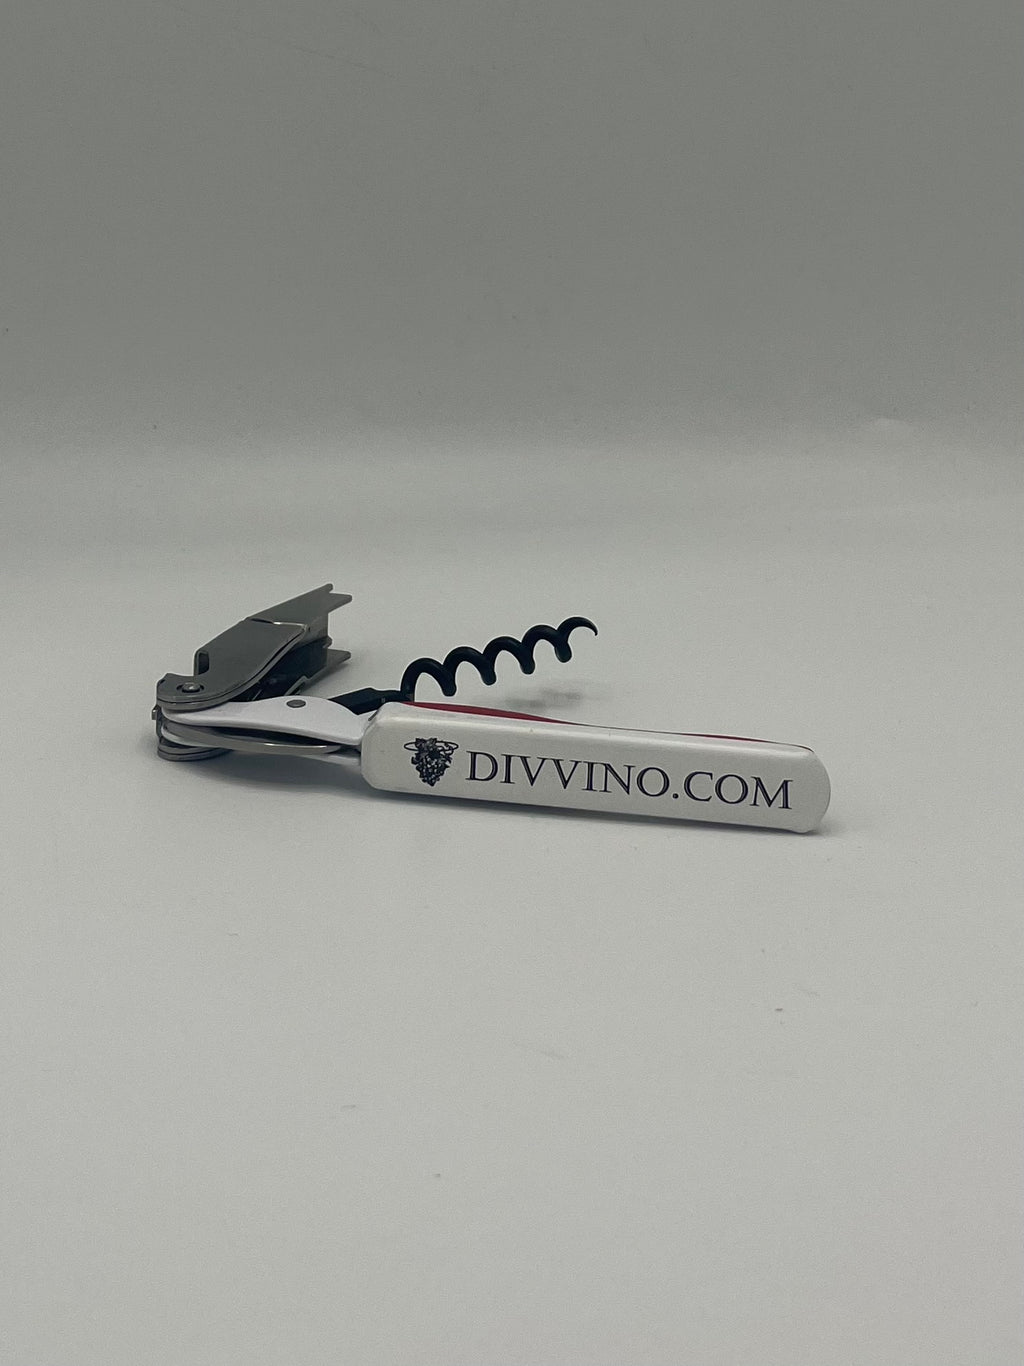 Divvino classic corkscrew